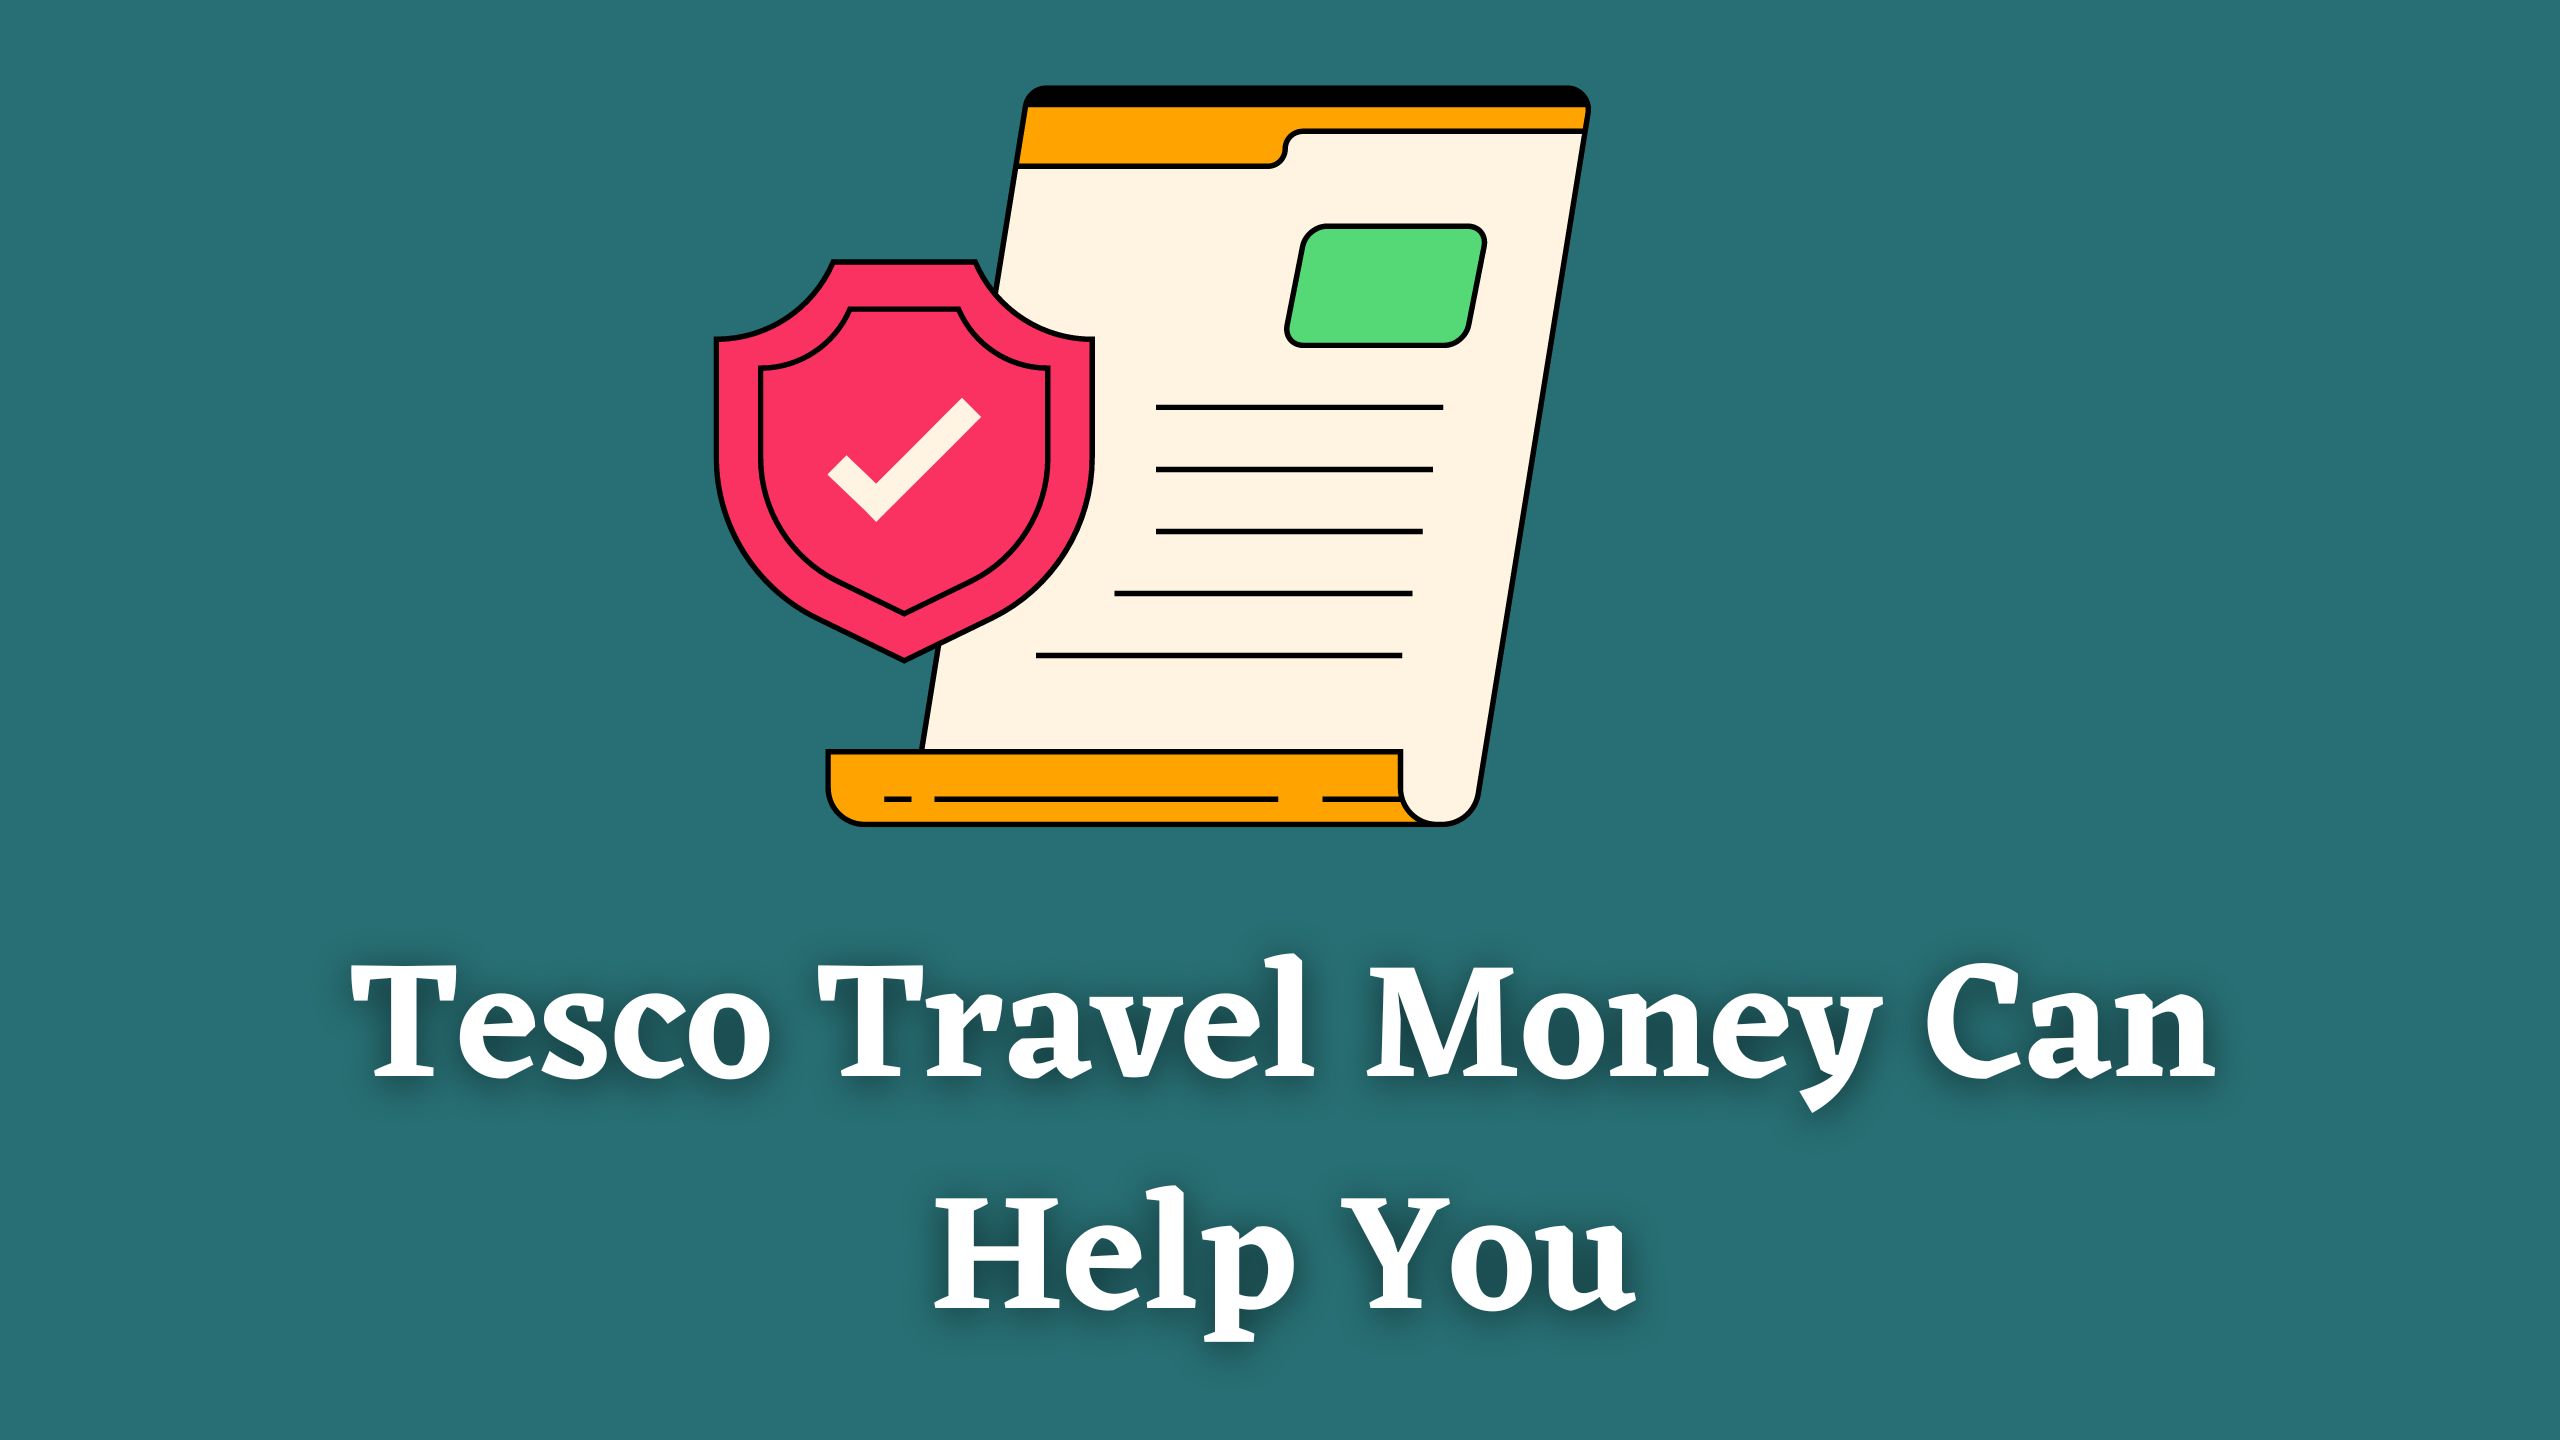 tesco travel insurance trustpilot